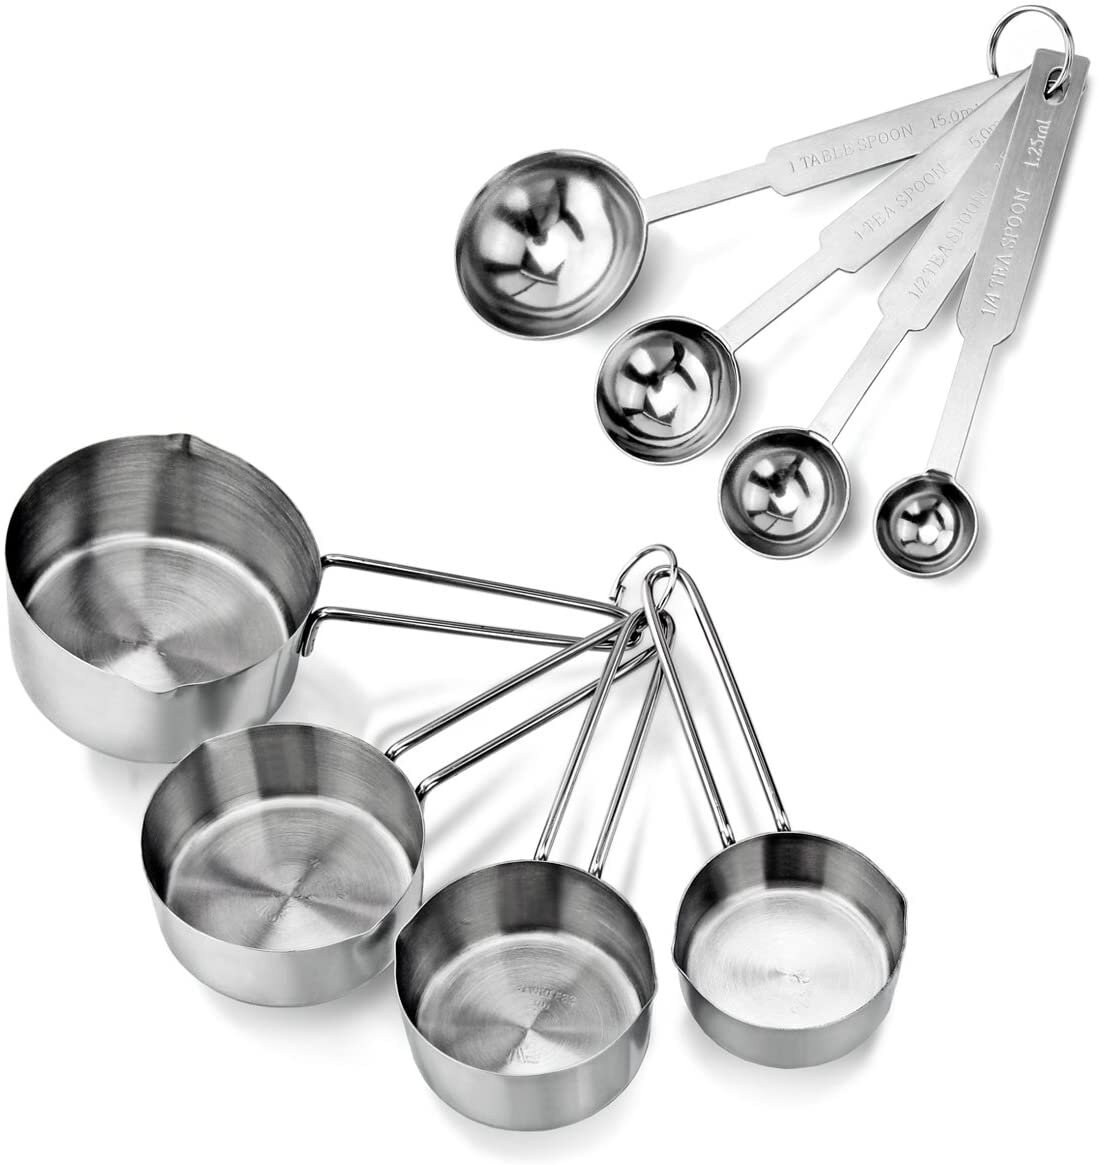 Measuring Cups & Spoons Set.jpg